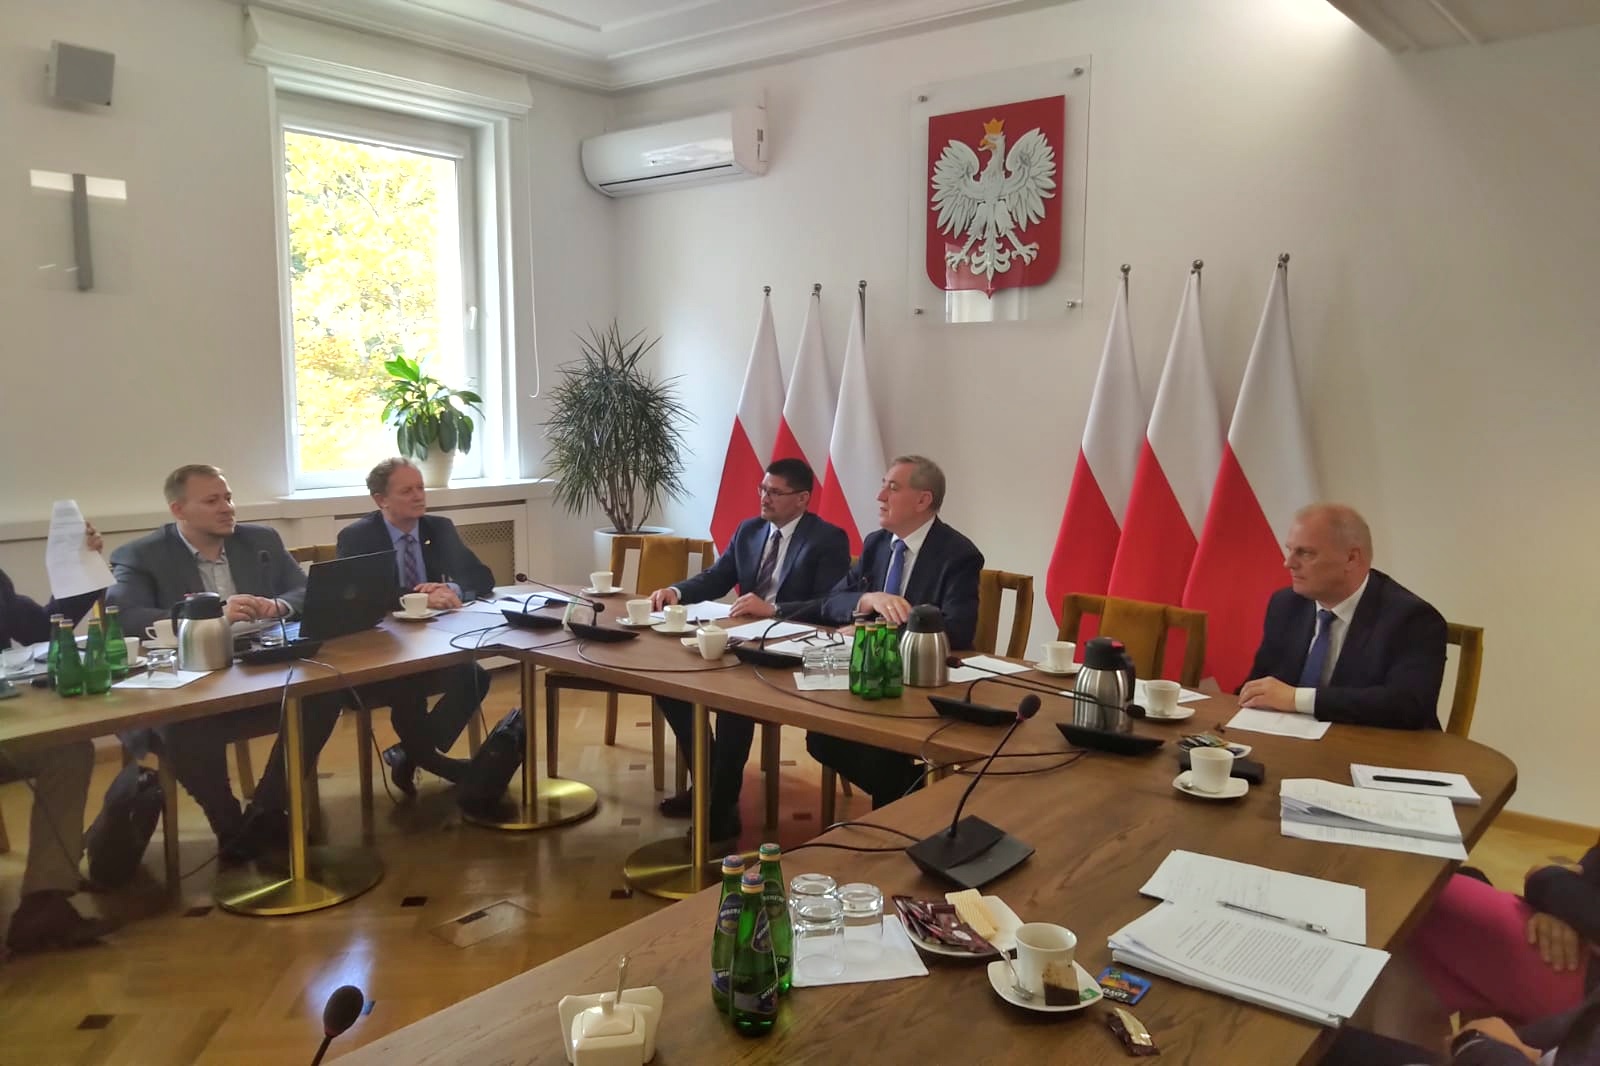 Spotkanie z przedstawicielami Porozumienia Warszaw